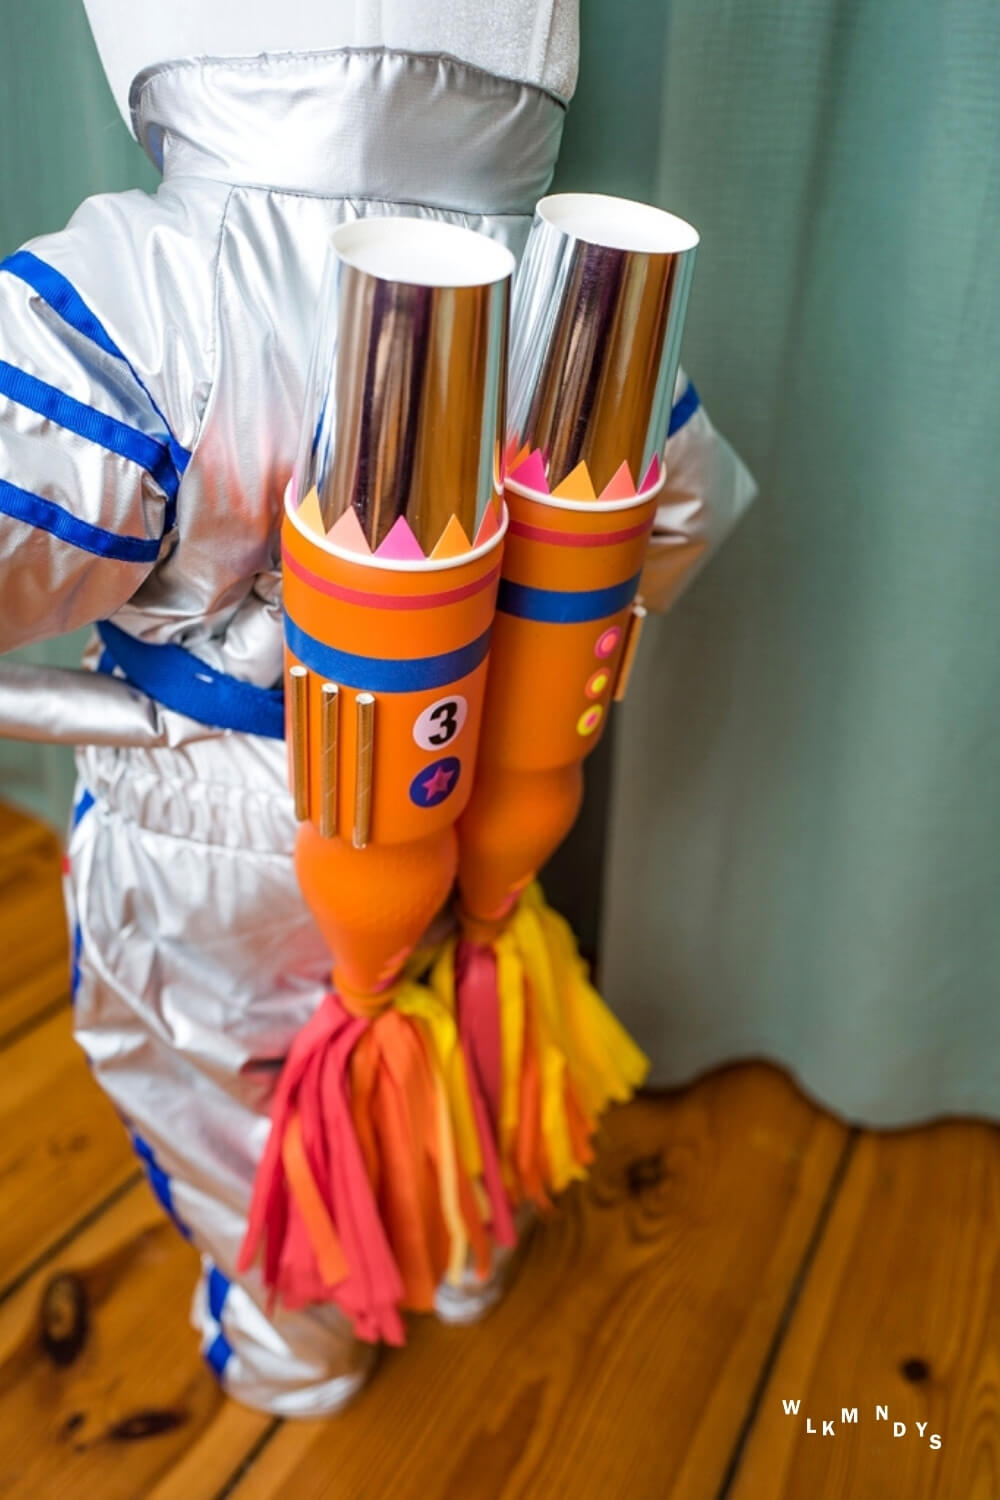 Raketenantrieb fuer das Astronauten Kostuem fuer Kinder basteln - Halloween DIY Ideen